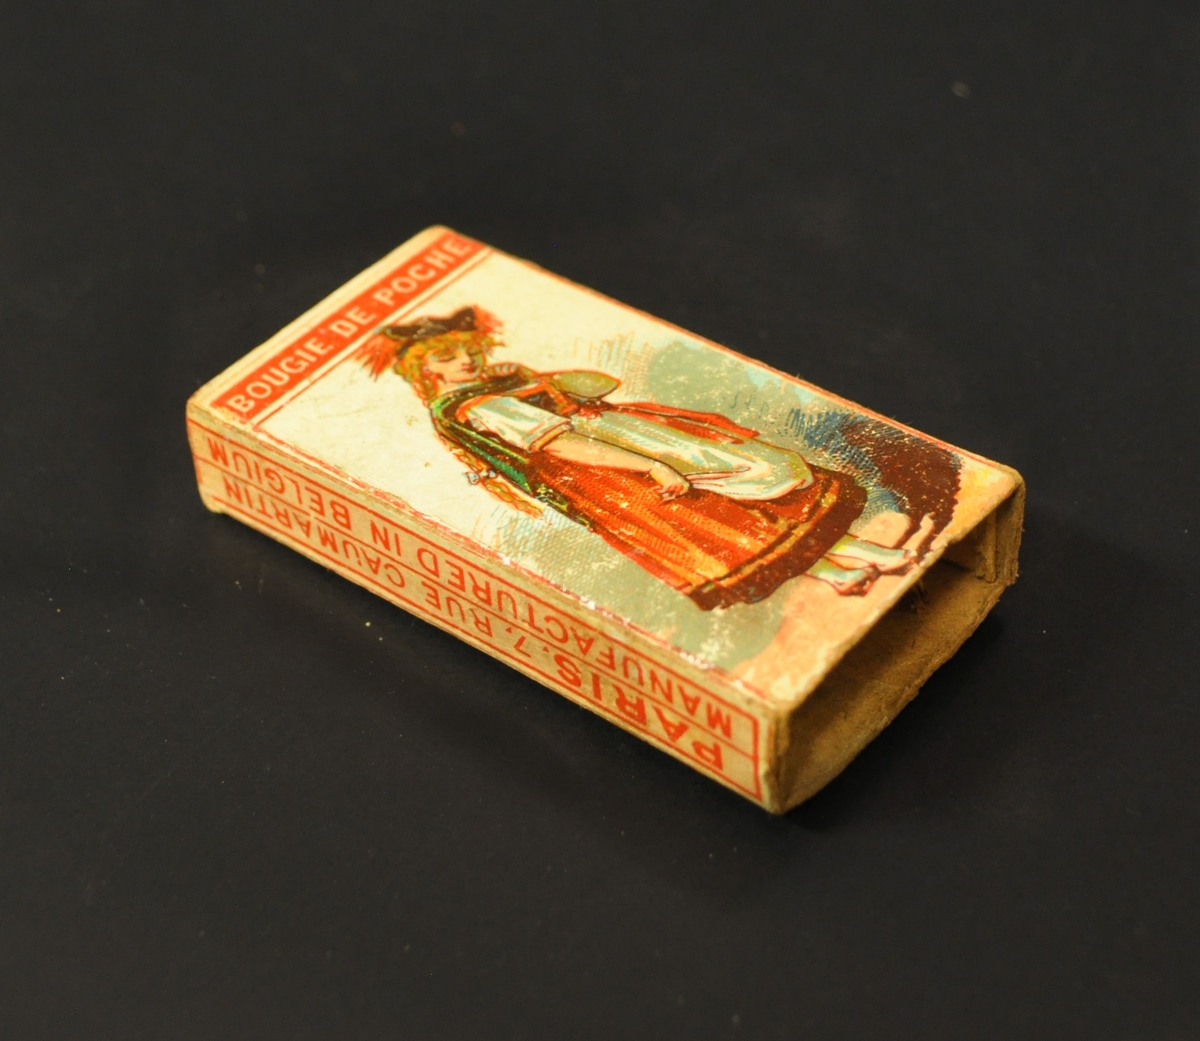 Tändsticksask som innehåller ett antal vaxtändstickor. Motiv på asken: en kvinna i folkdräkt.